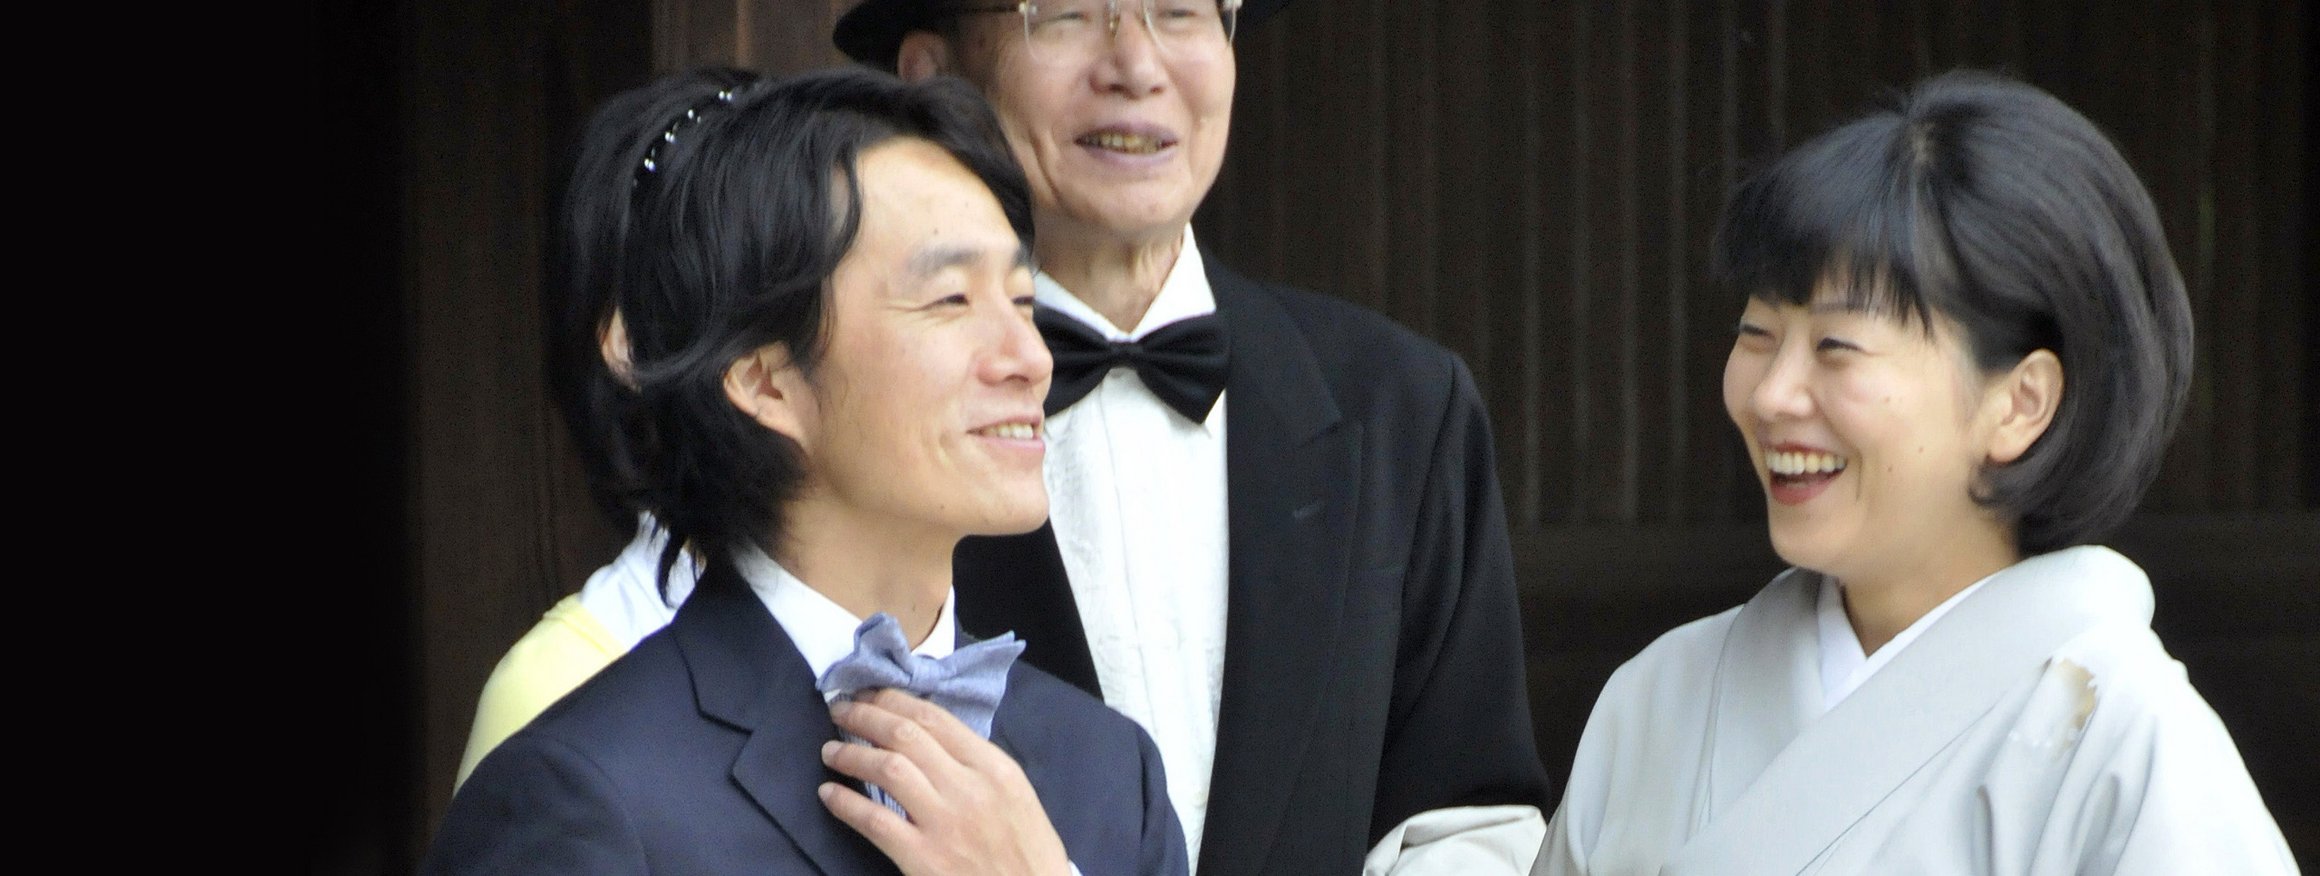 Eine japanische Familie feiert gemeinsam eine Zeremonie und alle lachen dabei herzlich und leben ihre eigene Form von Zufriedenheit